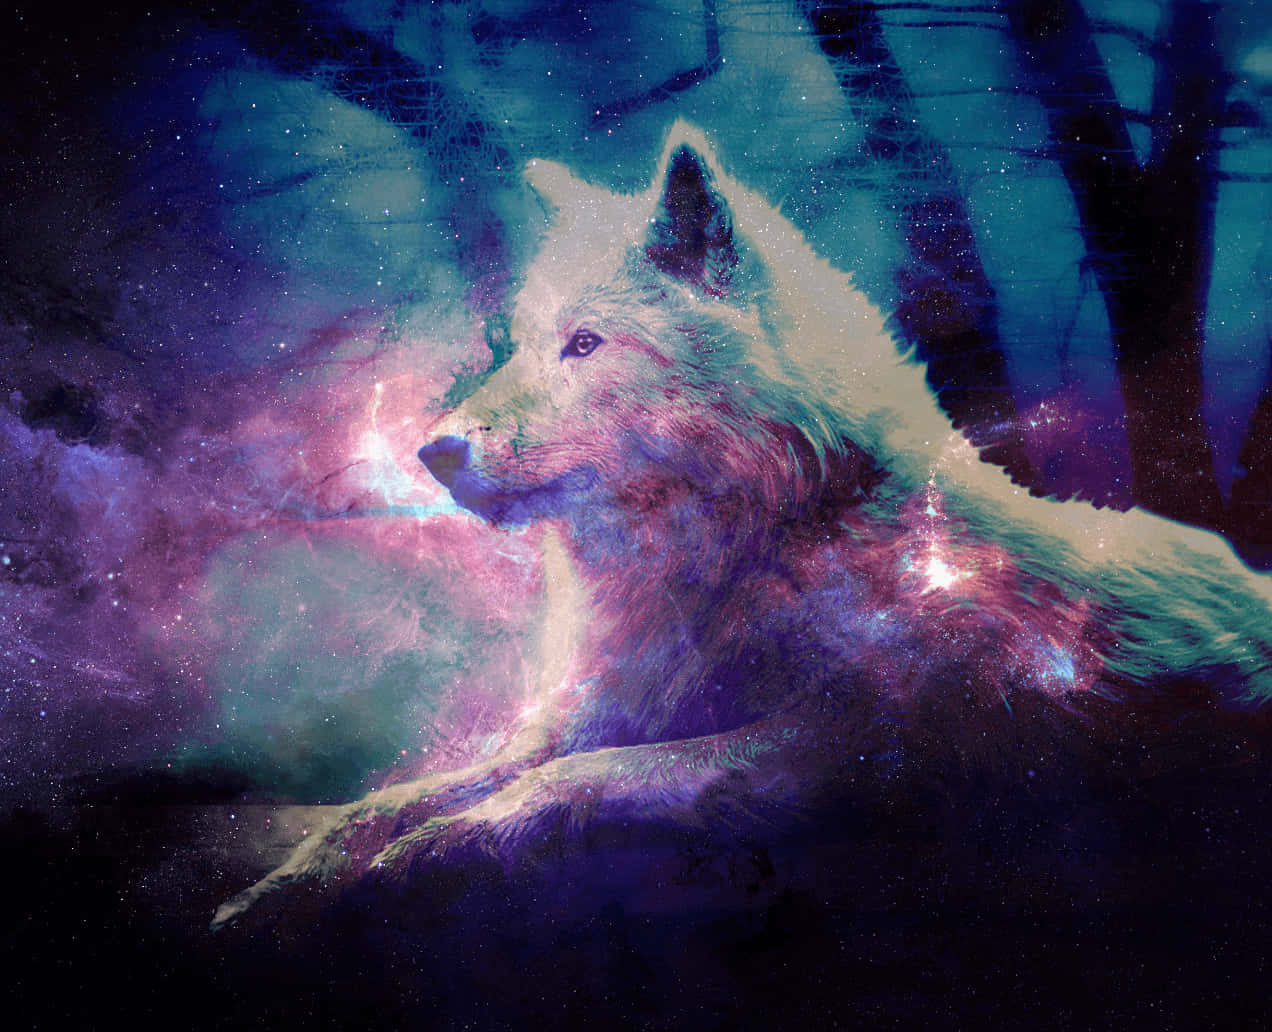 Kig op mod nattens wonders med den mystiske galaks ulv tapet. Wallpaper